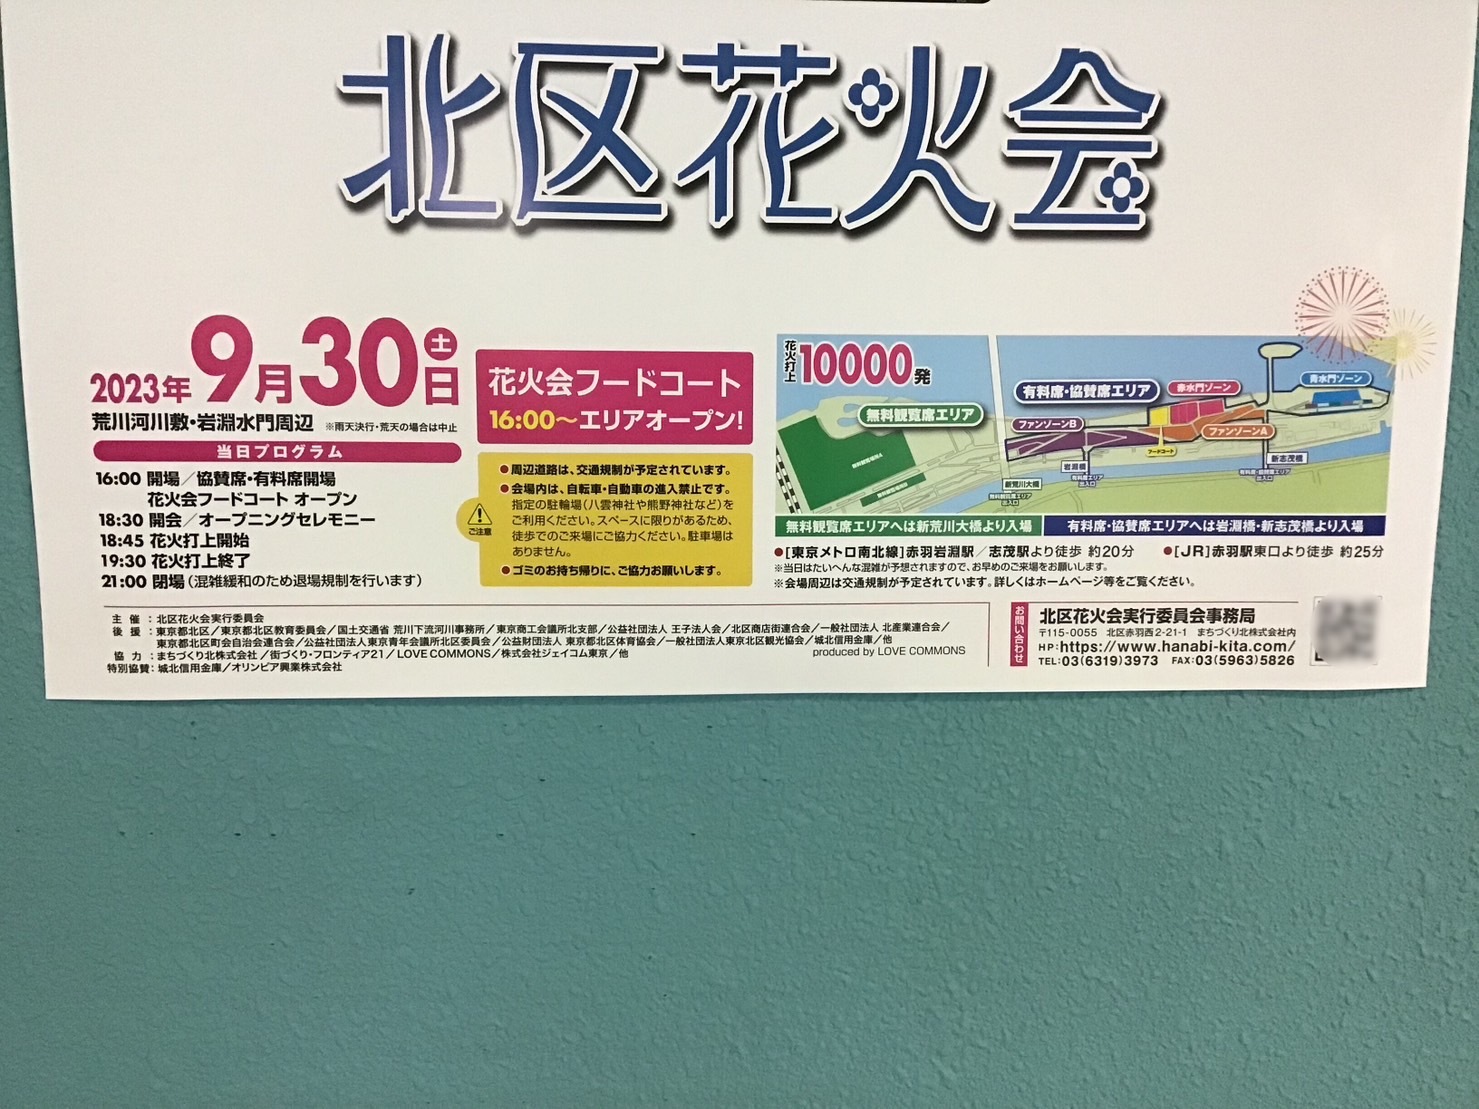 東京都北区】9/30に開催される第10回「北区花火会」のポスターを詳しく